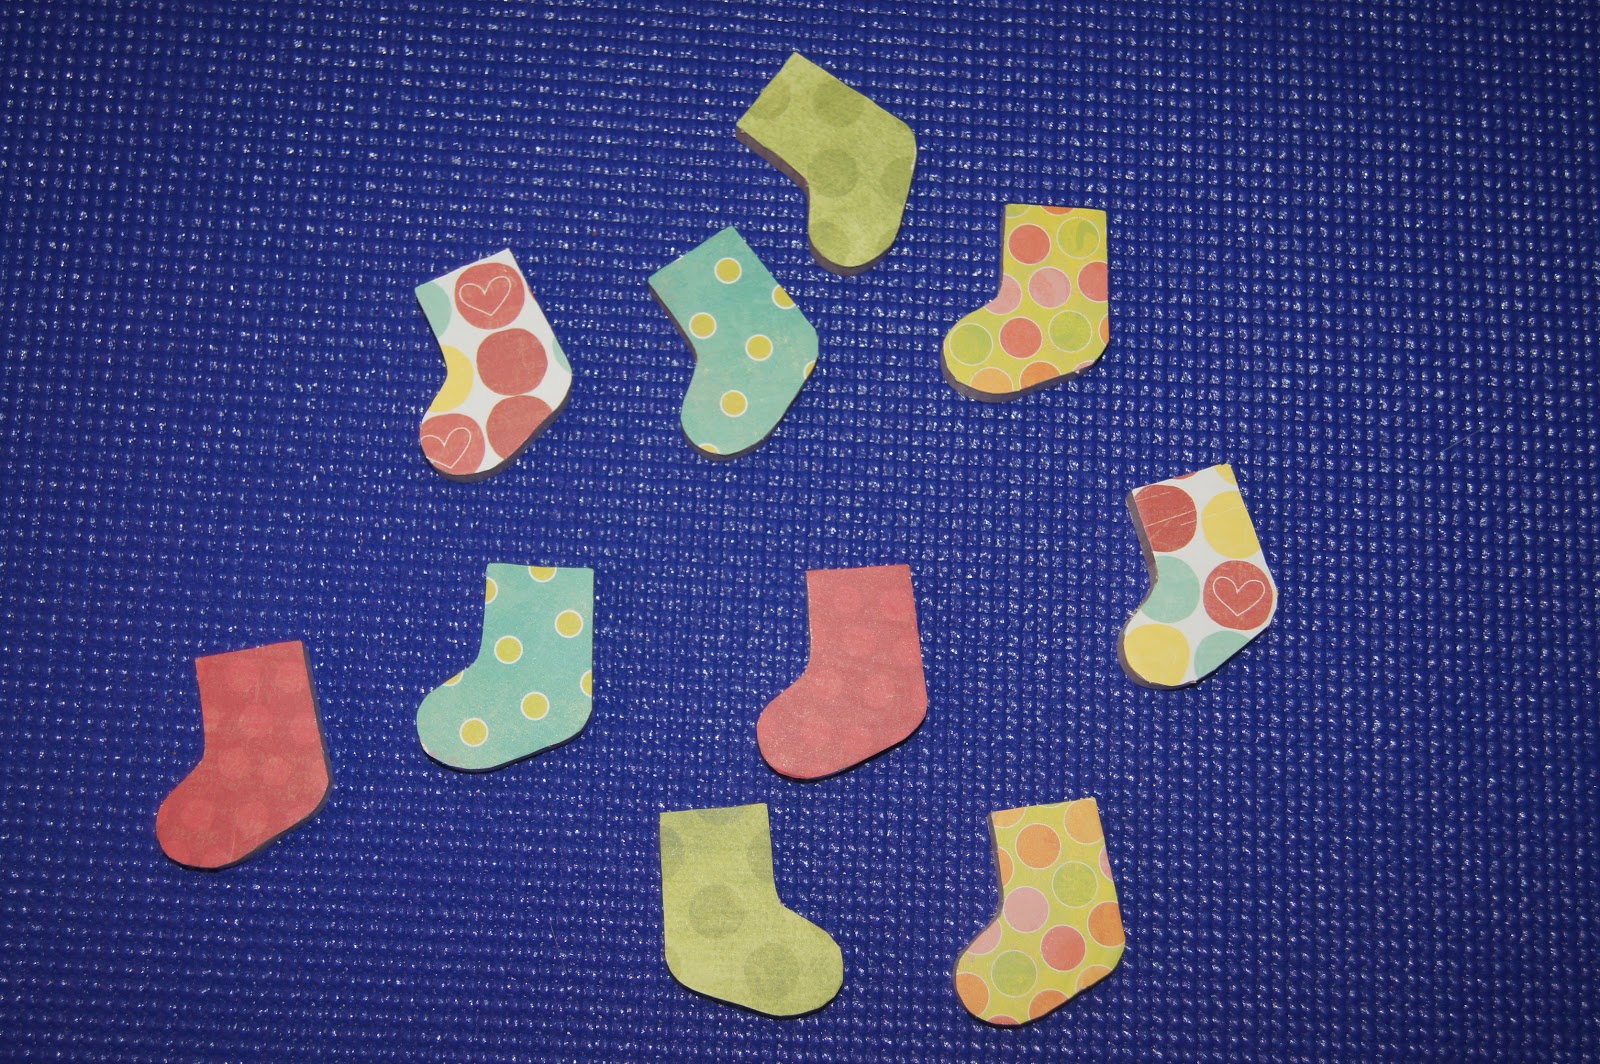 Mitten & Sock Matching Game, DIY Wooden Matching Game Montessori At ...